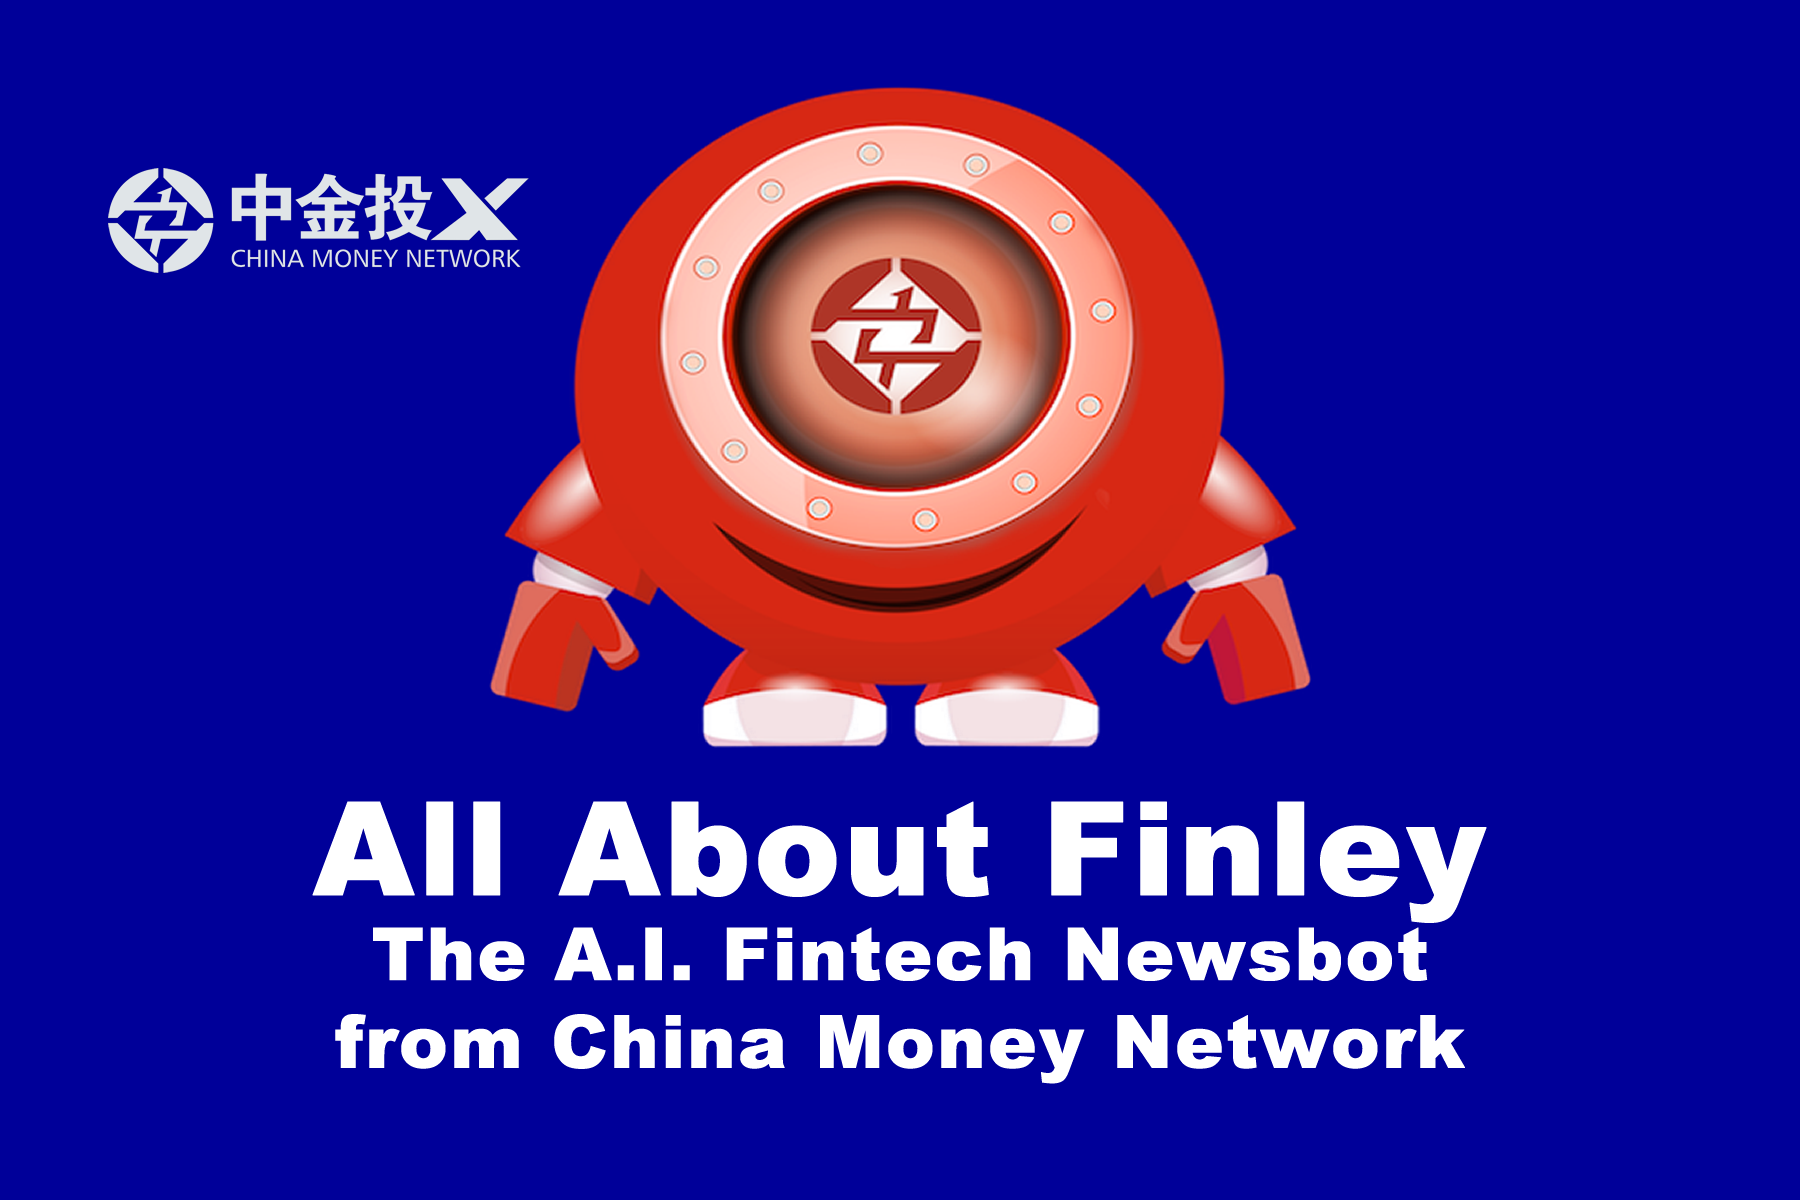 Finley Newsbot